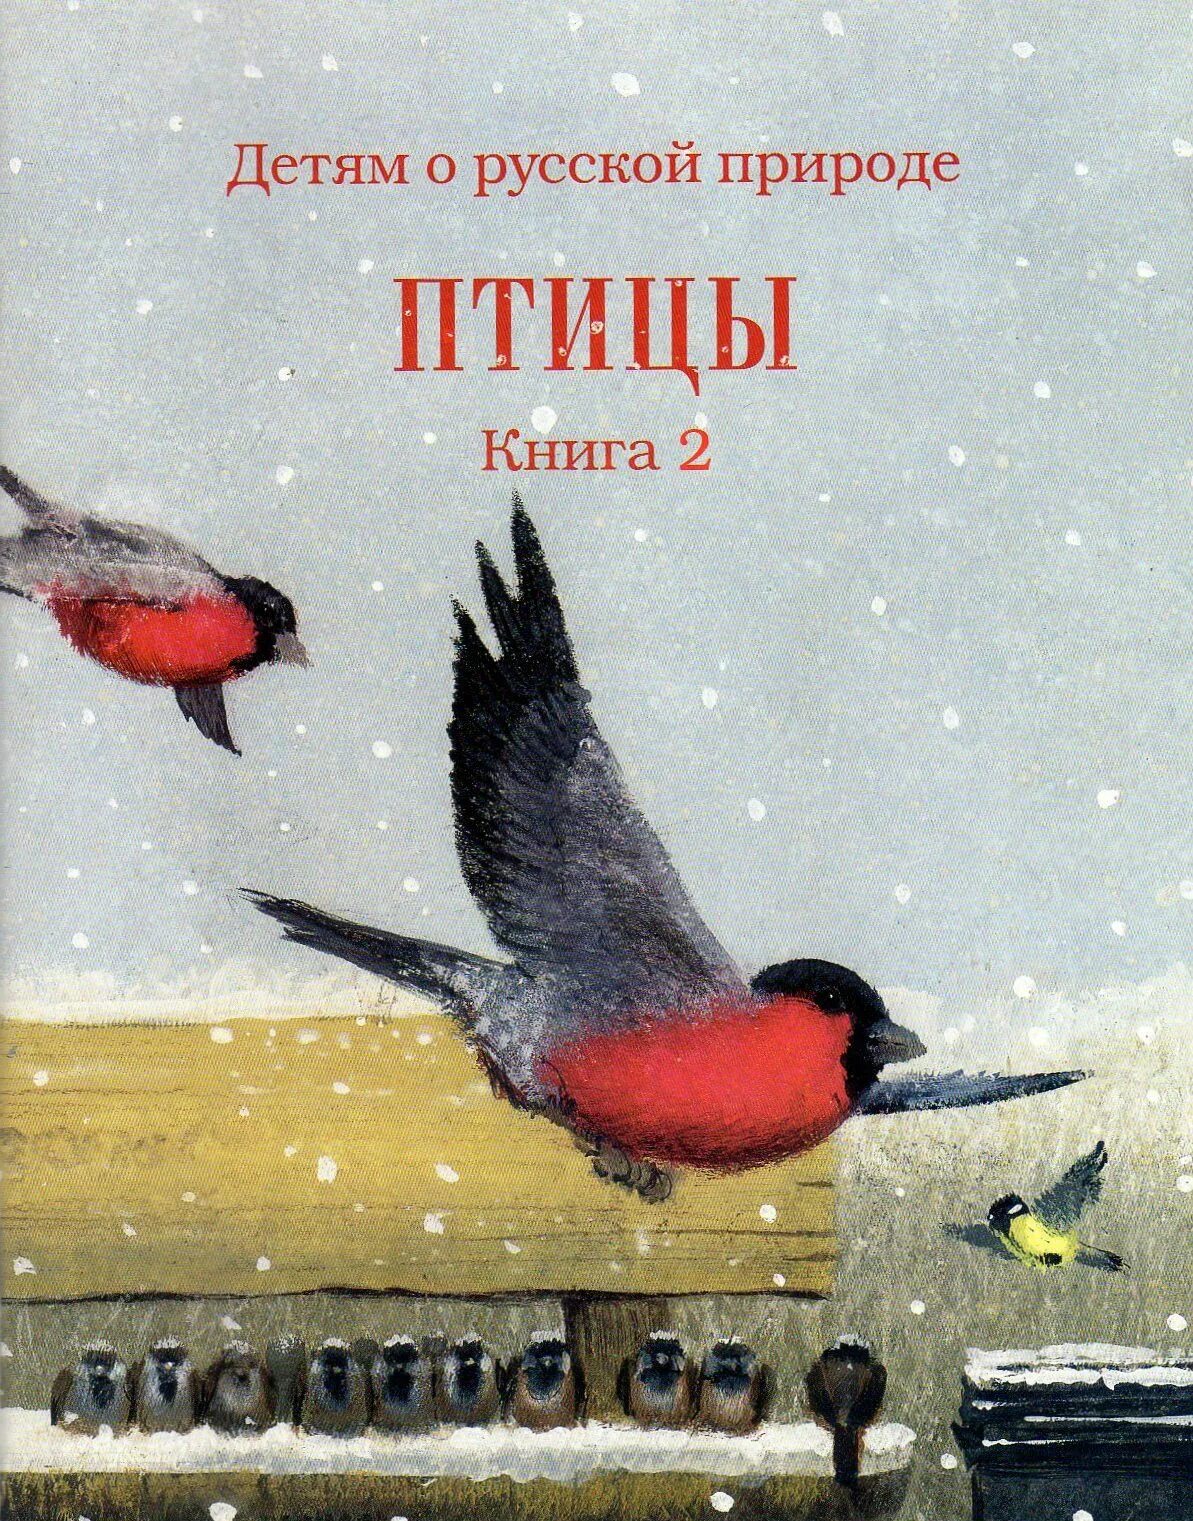 Содержание птиц книги. Rybub j gnbwf[ lkz ltntq. Книги о птицах для детей. Книги о птицах Художественные. Книги о птицах для детей Художественные.